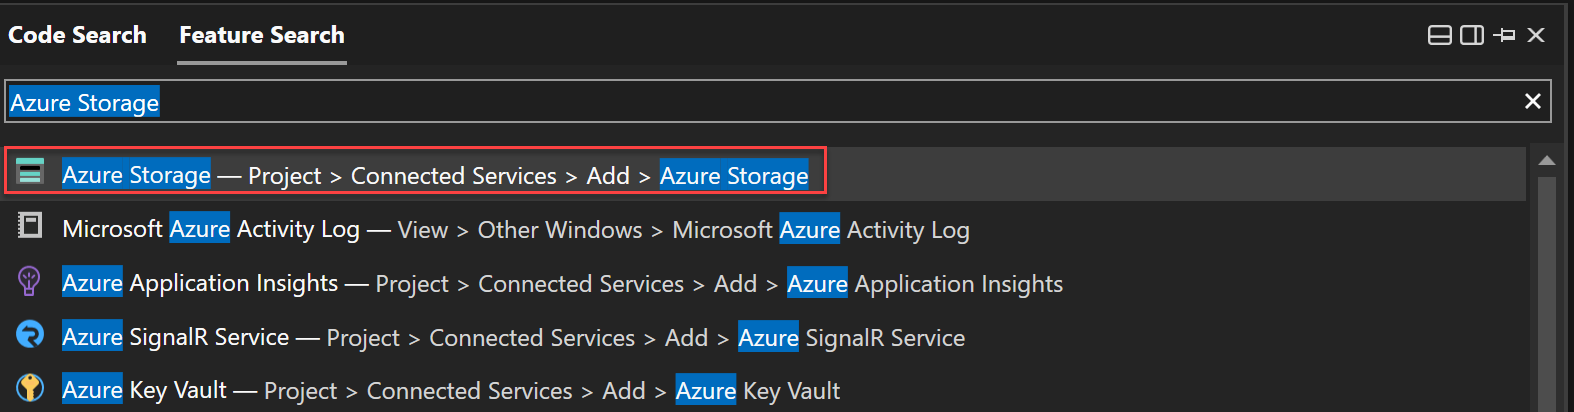 Captura de pantalla del uso de Feature Search para buscar Azure Storage.